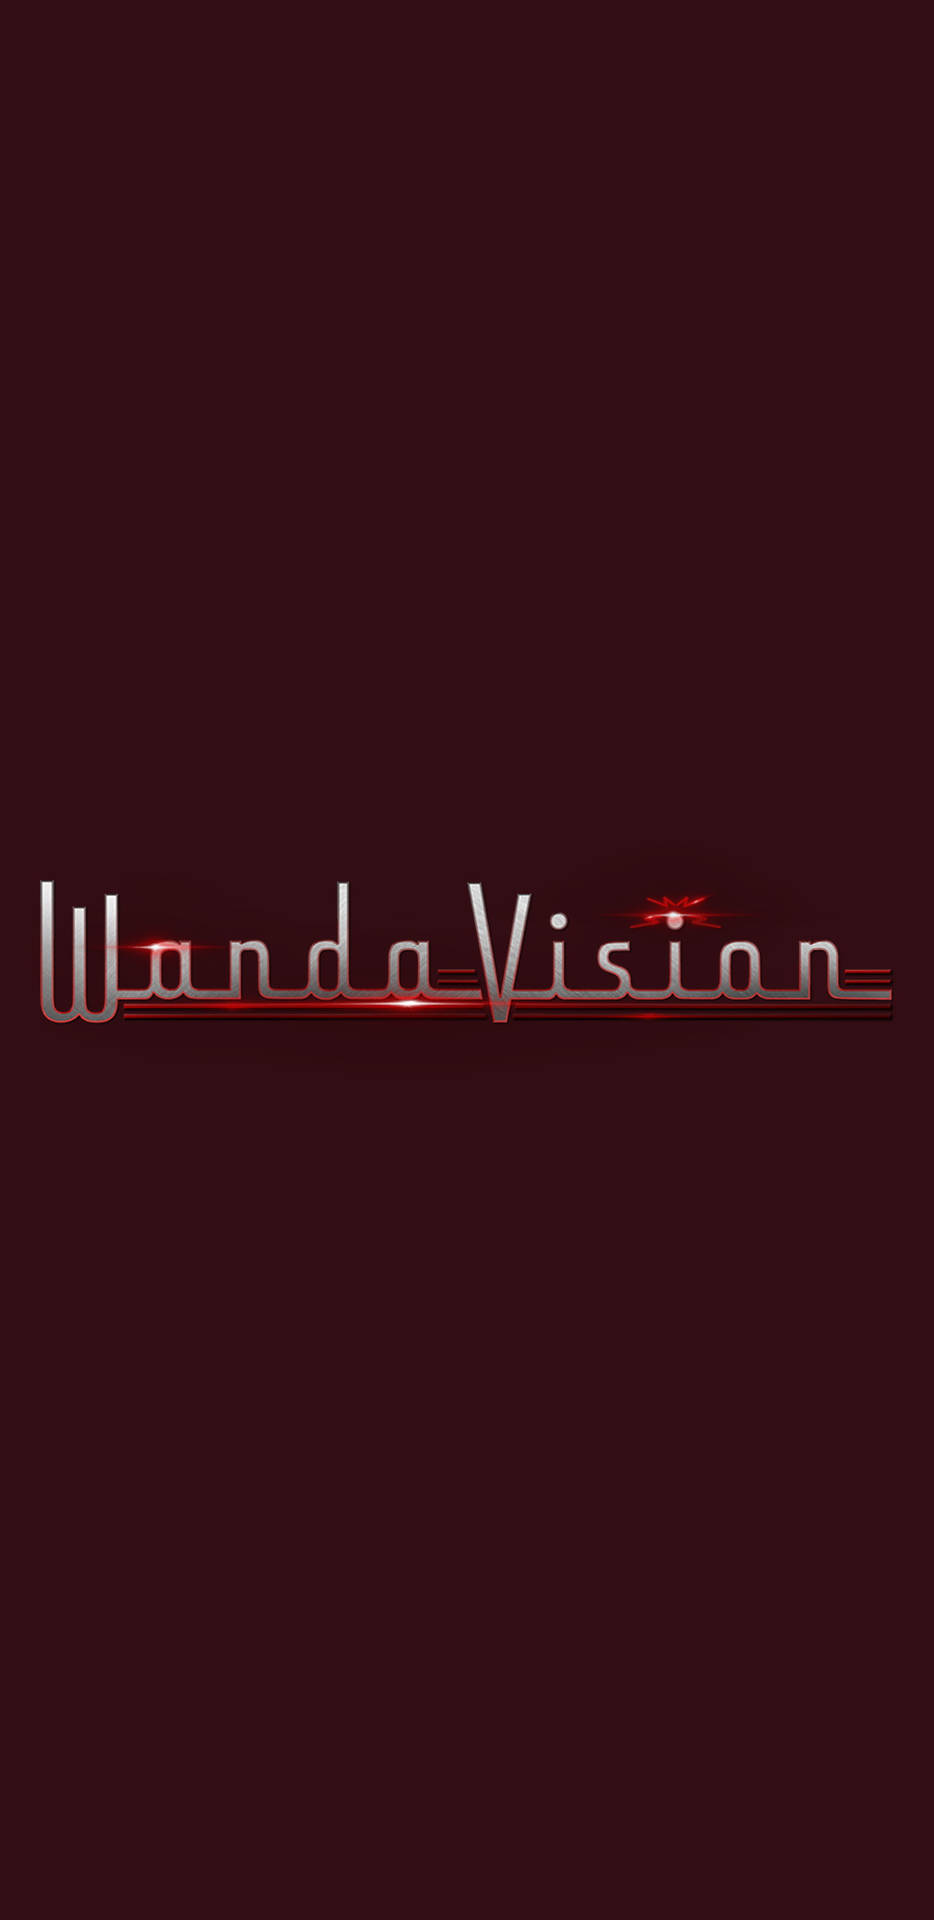 Disney Plus Wandavision Logo Background